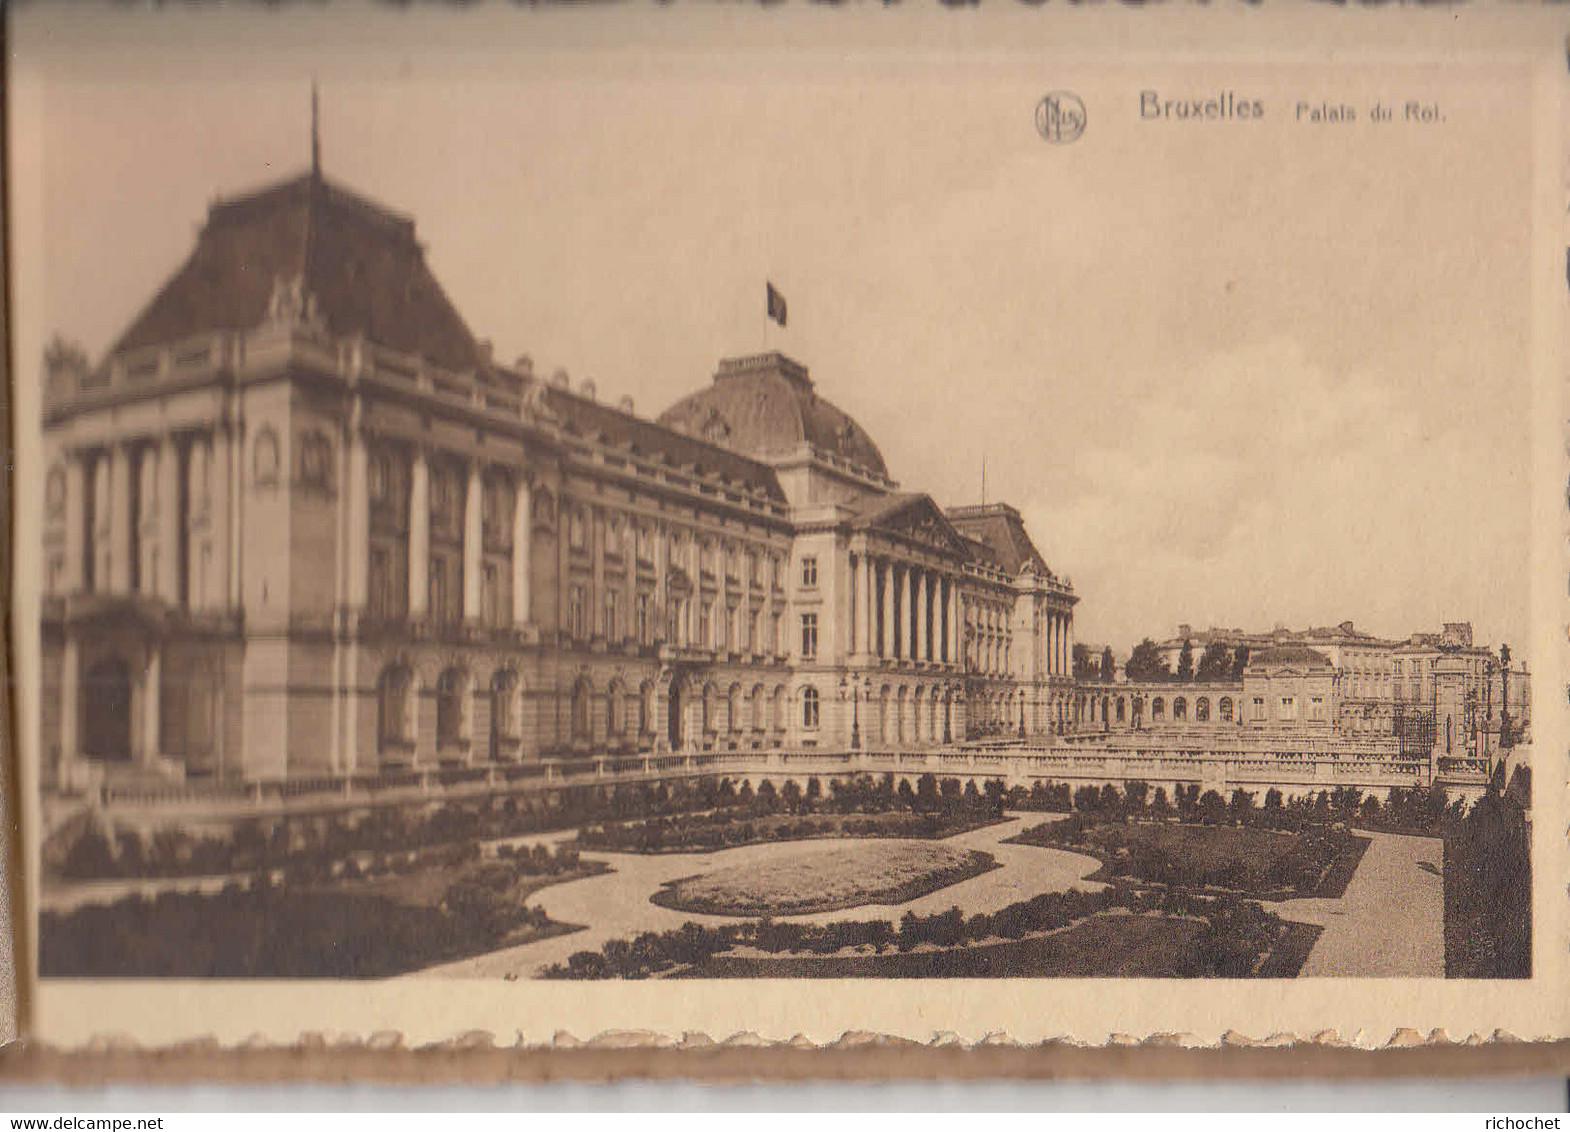 BRUXELLES - carnet de 10 Cartes-vues détachables